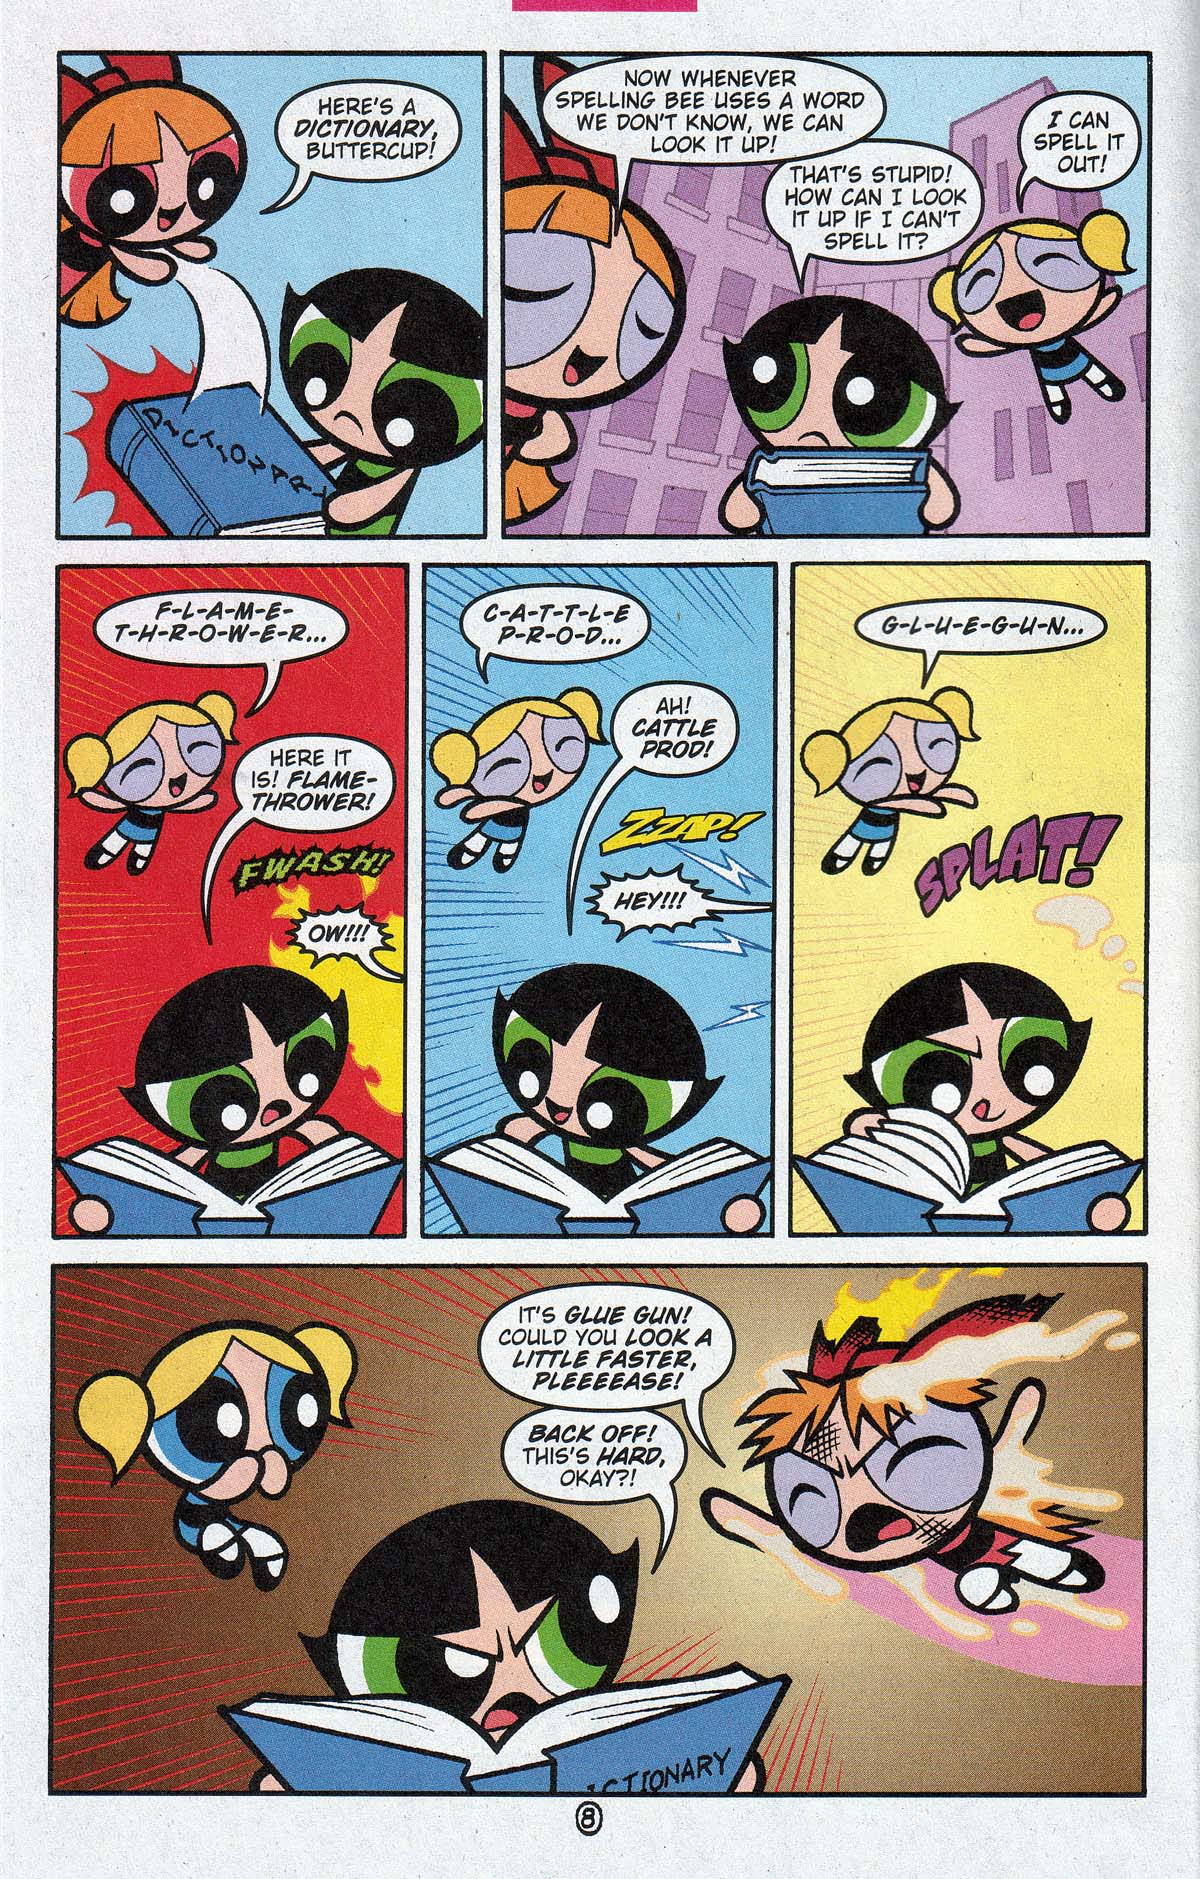 The Powerpuff Girls Issue Read The Powerpuff Girls Issue Comic